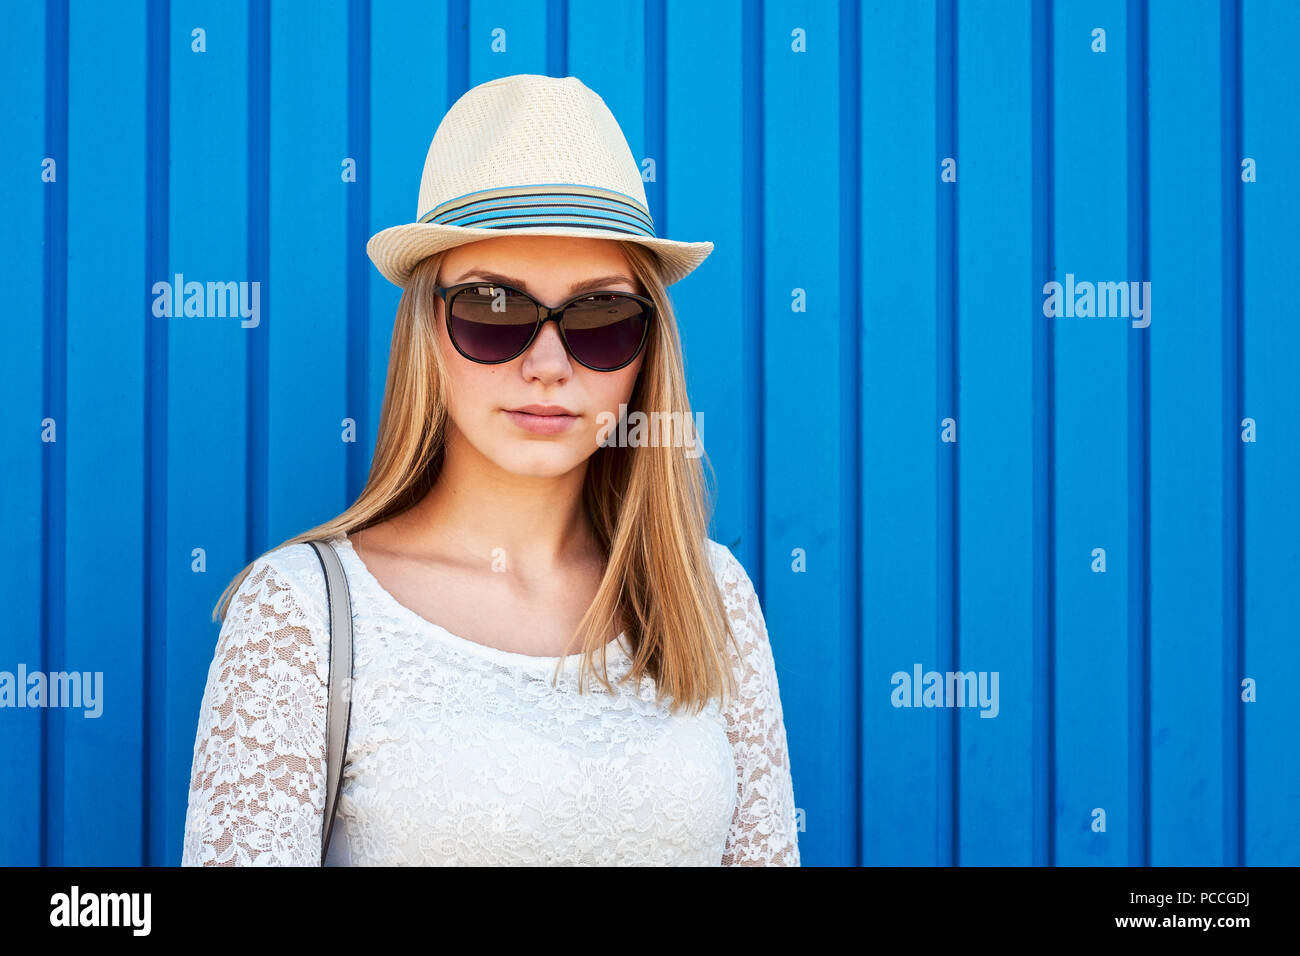 De vie de plein air portrait de jeune fille hipster avec de longs cheveux blonds, des lunettes et un chapeau posant sur fond bleu Banque D'Images